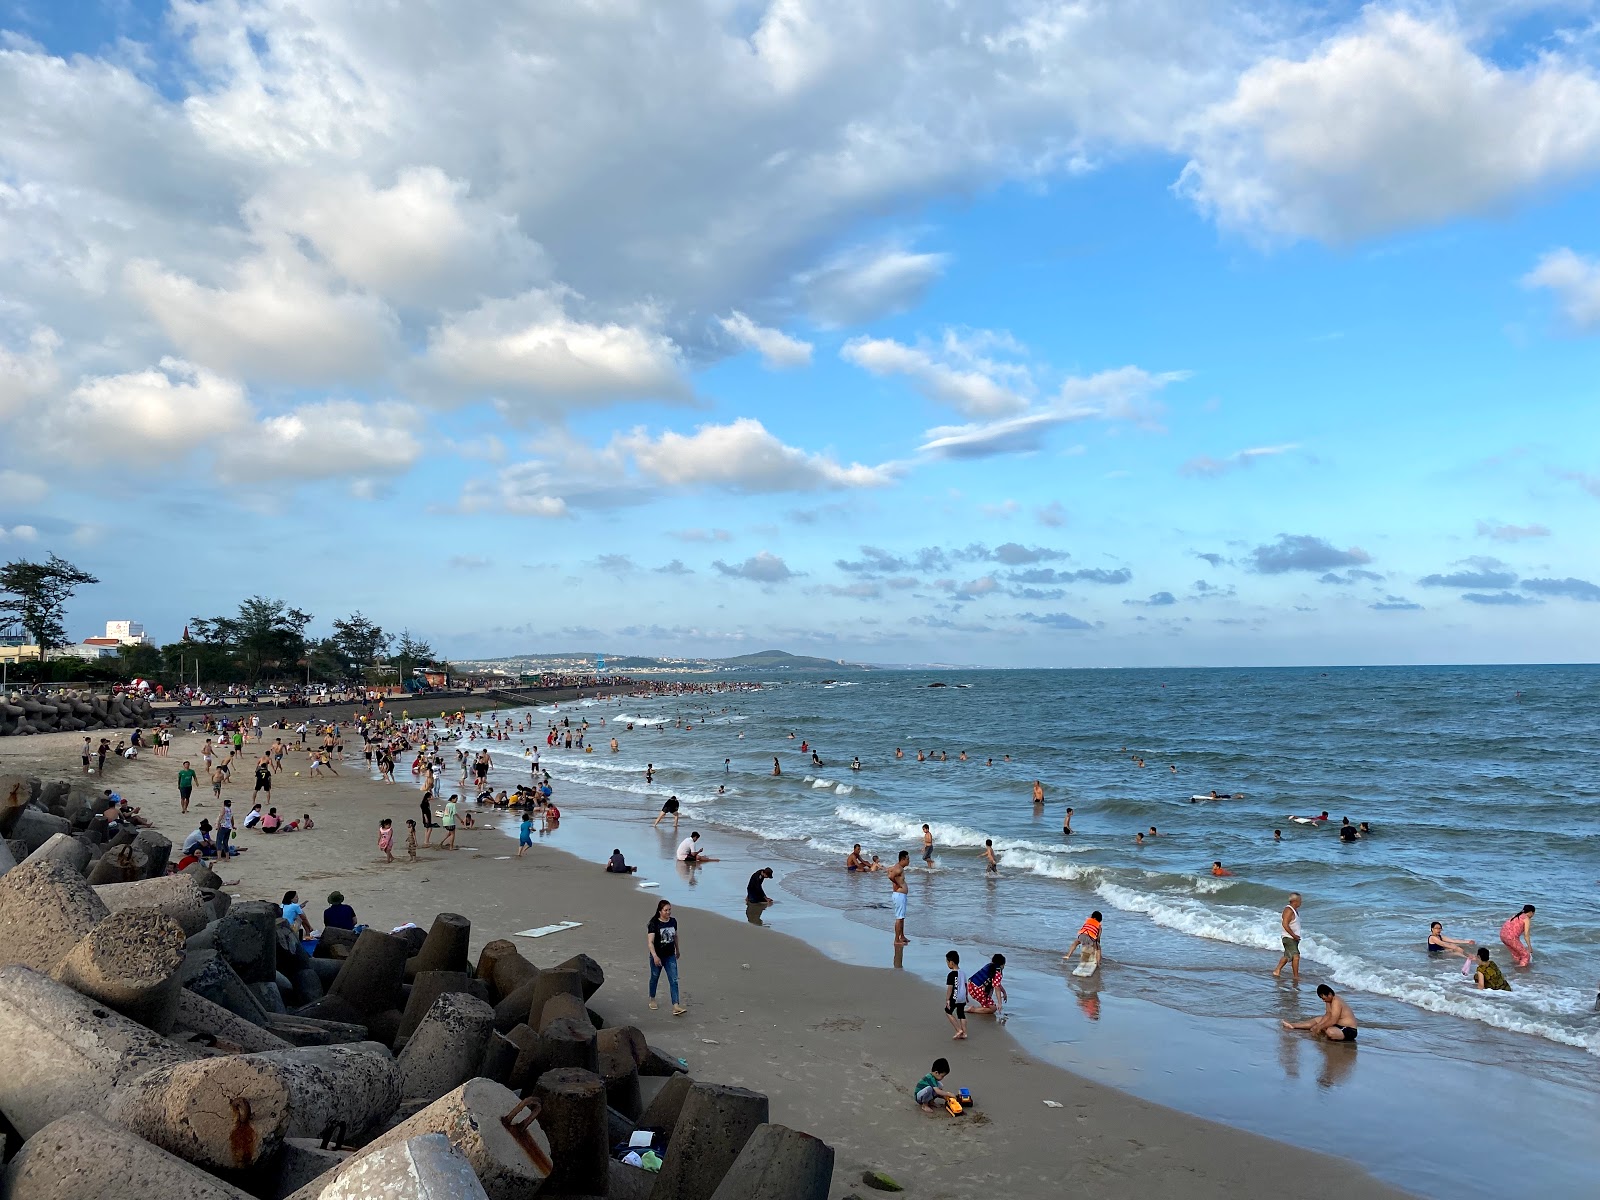 Zdjęcie Thuong Chanh beach z powierzchnią jasny piasek